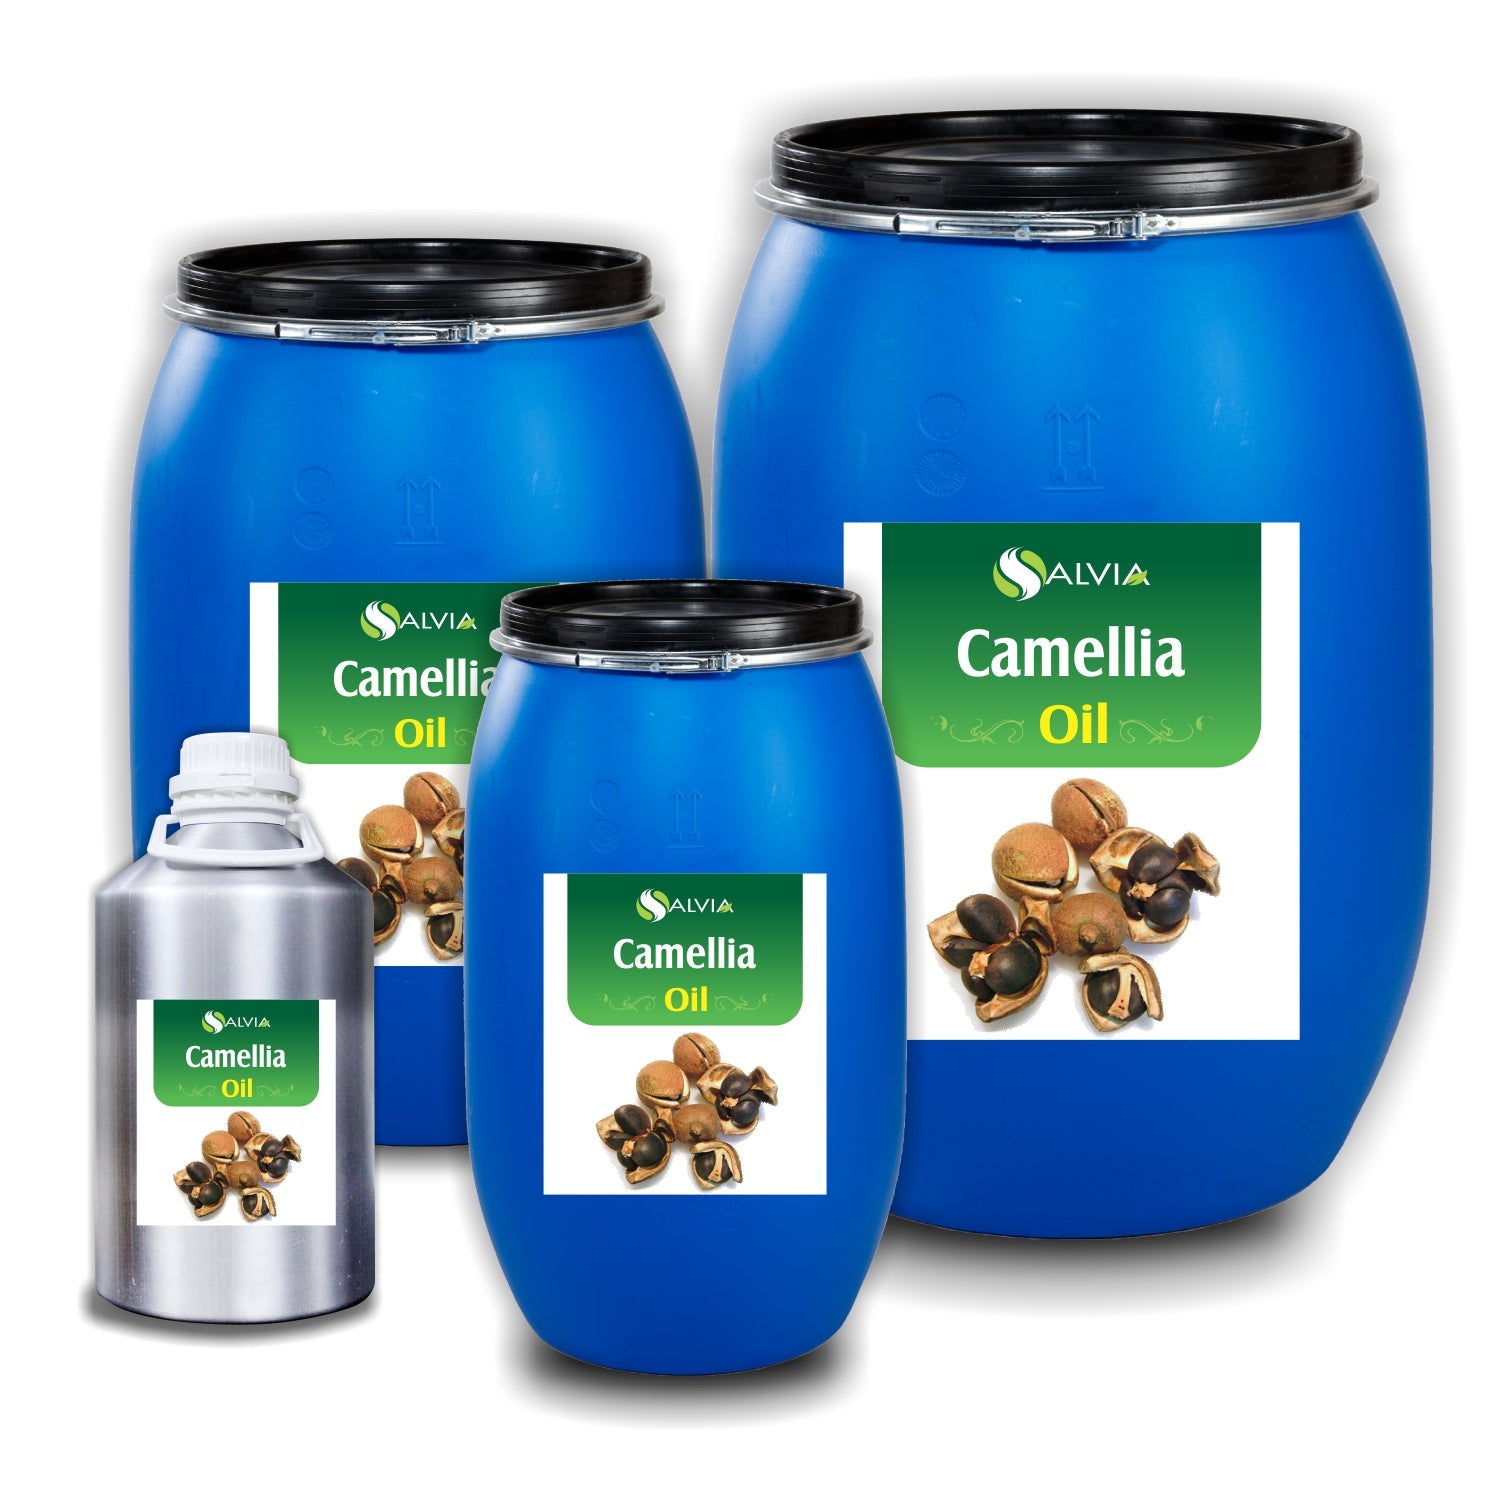 Salvia Natural Carrier Oils 10kg Camellia Oil (Camellia oleifera) Pure & Natural Carrier Oil